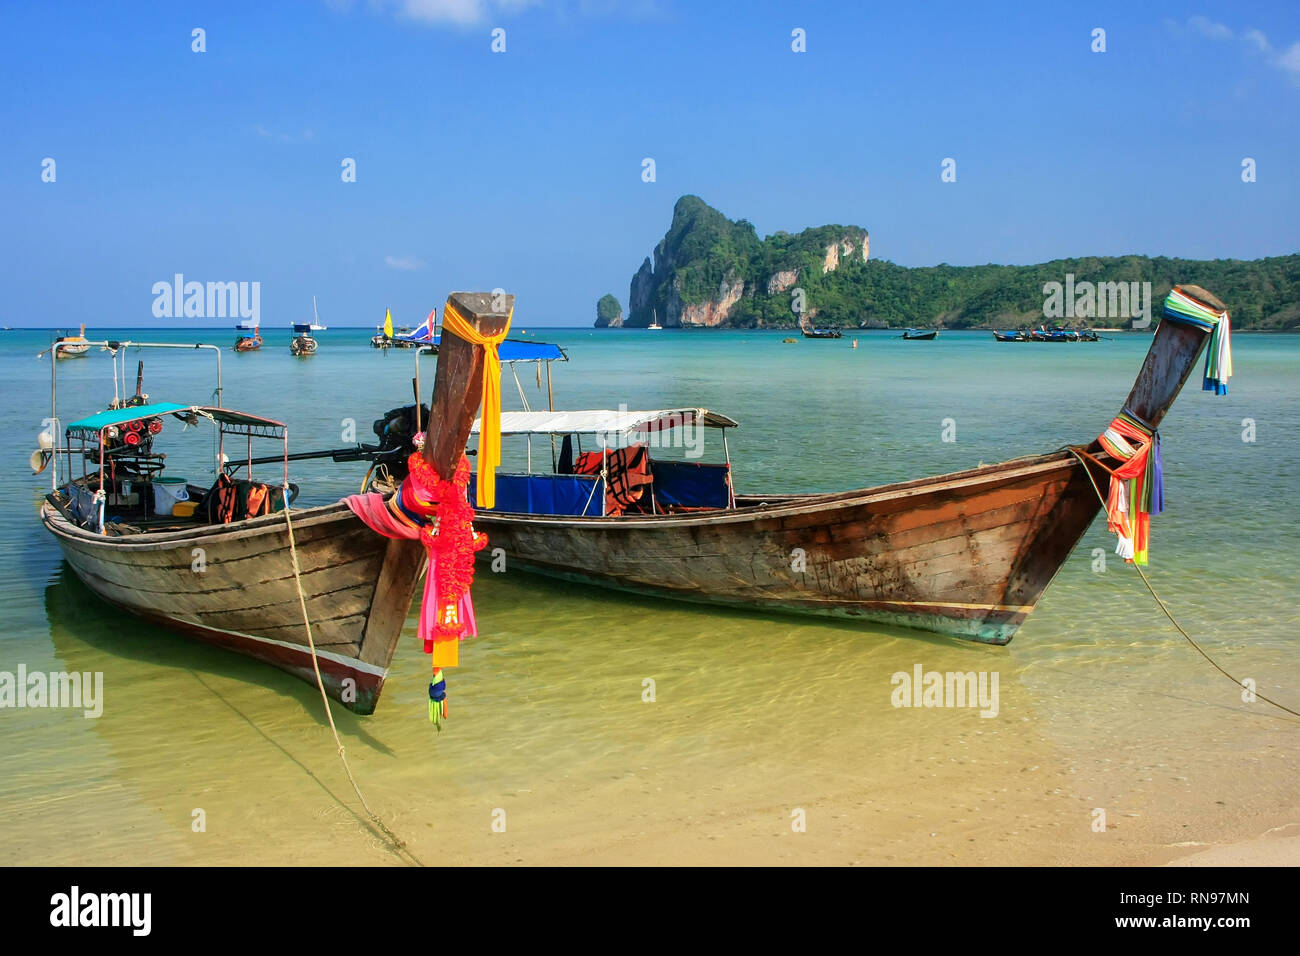 "Longtail" barcos anclados en el Ao Loh Dalum Beach en la isla de Phi Phi Don, de la provincia de Krabi, Tailandia. Koh Phi Phi Don es parte de un parque nacional marino. Foto de stock